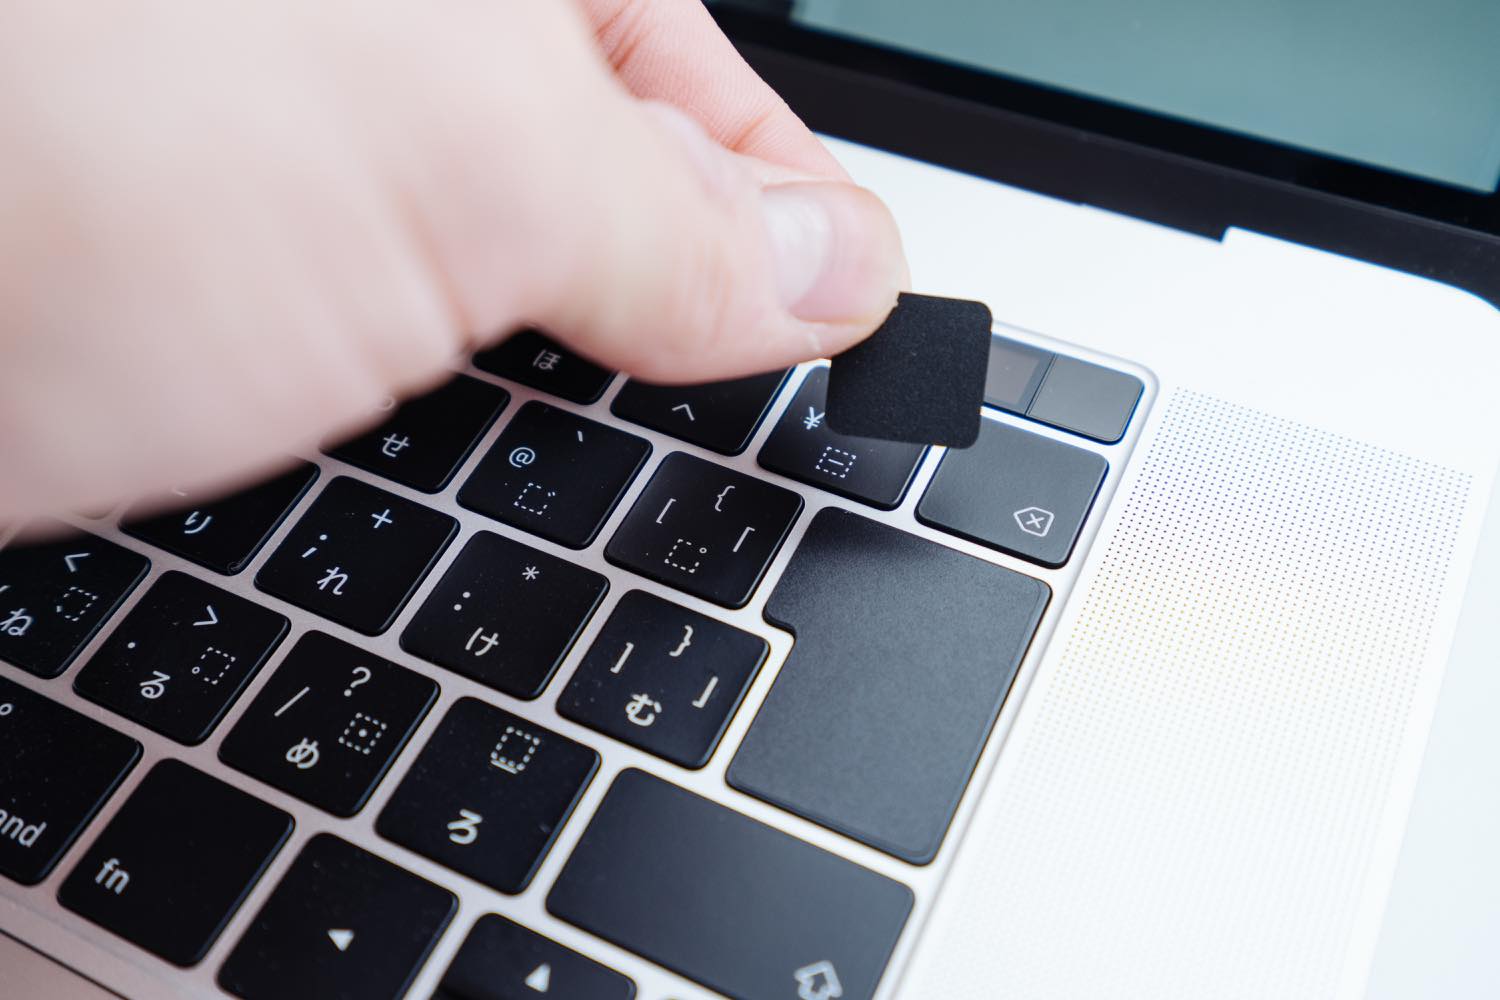 MacBookをミニマルに。貼るだけでキーボードを無刻印化する『ブラックアウトステッカー for Mac』レビュー